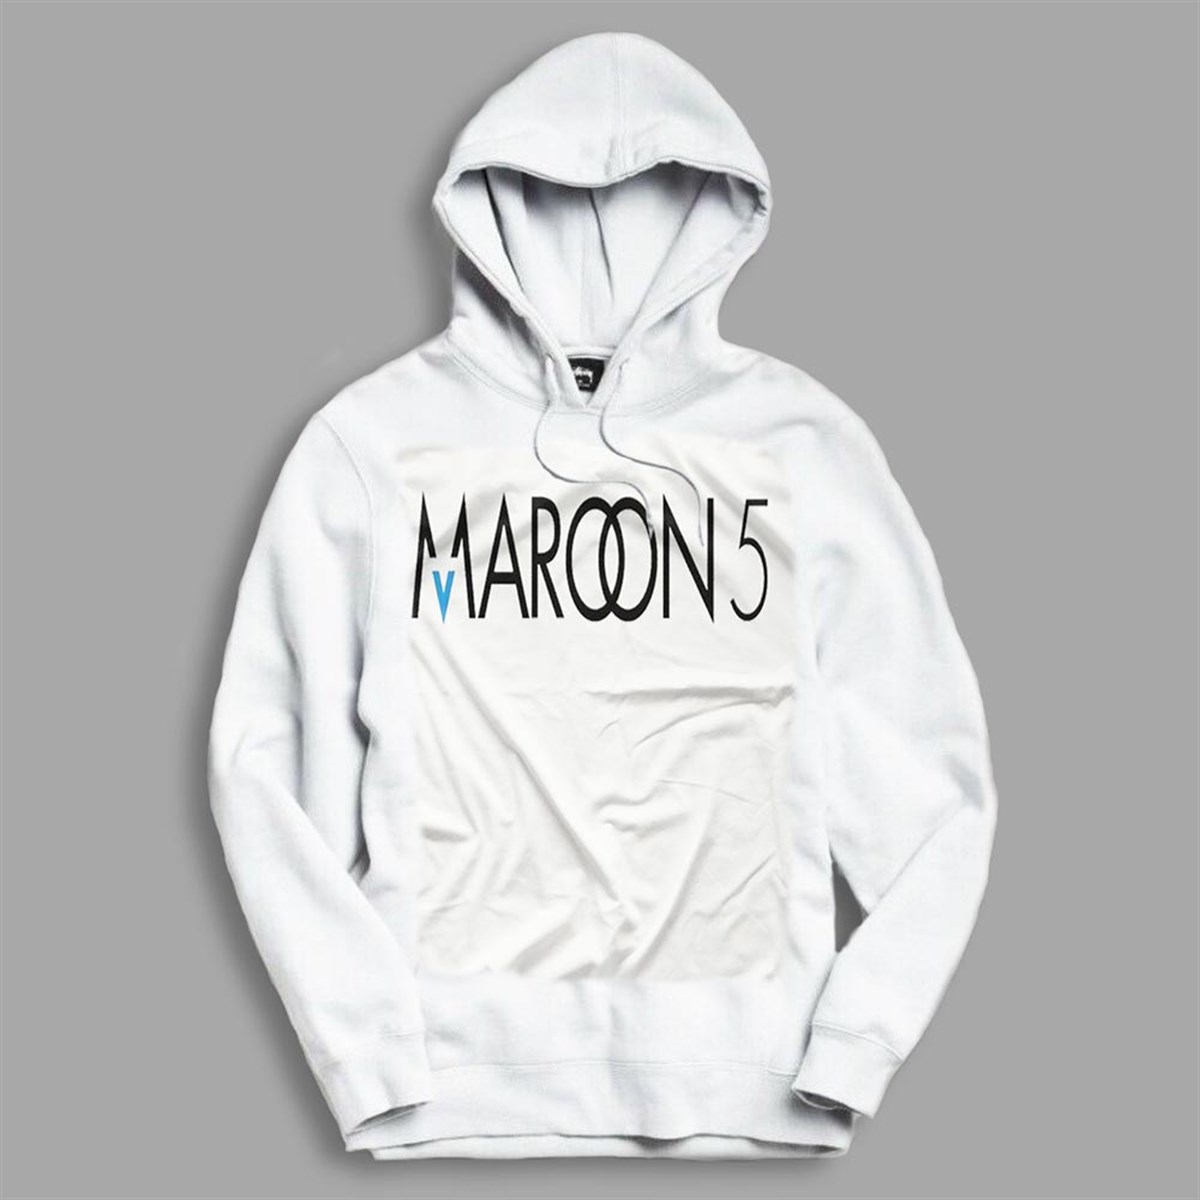 Maroon 5 Hoodie | Maroon 5 Sweatshirt